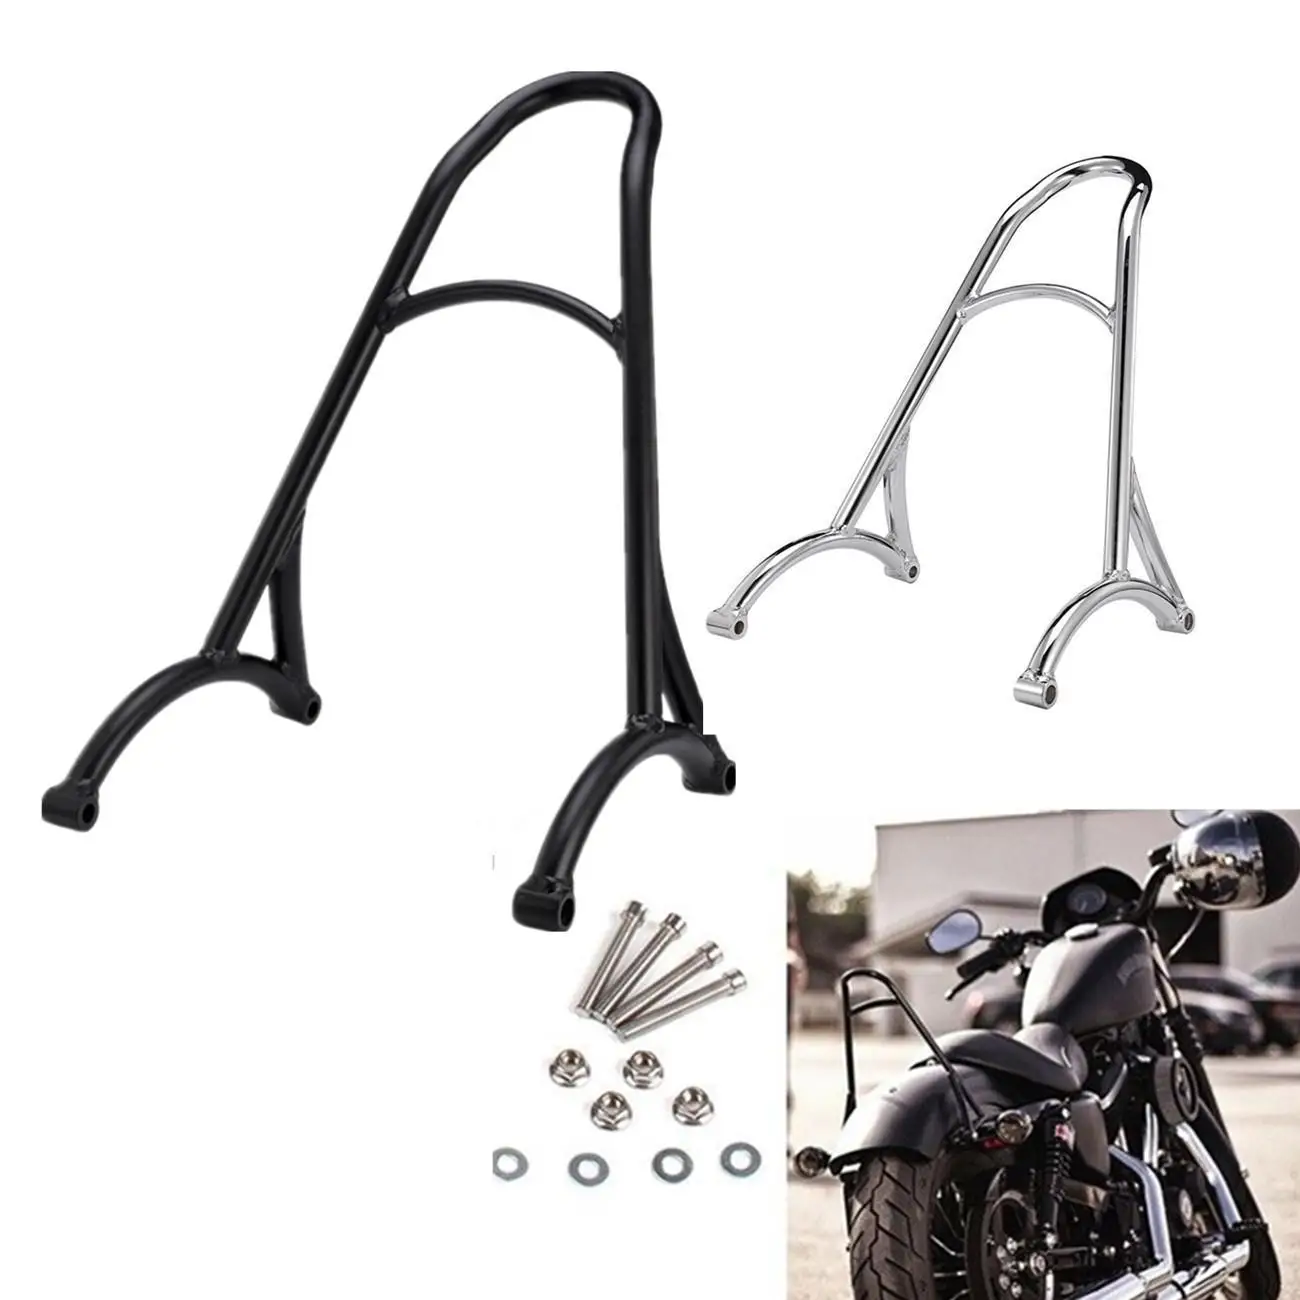 Motorcycle Parts Black/Chrome Short Passenger Sissy Bar Backrest For Harley Sportster XL Iron Nightster 883 1200 04-16 15